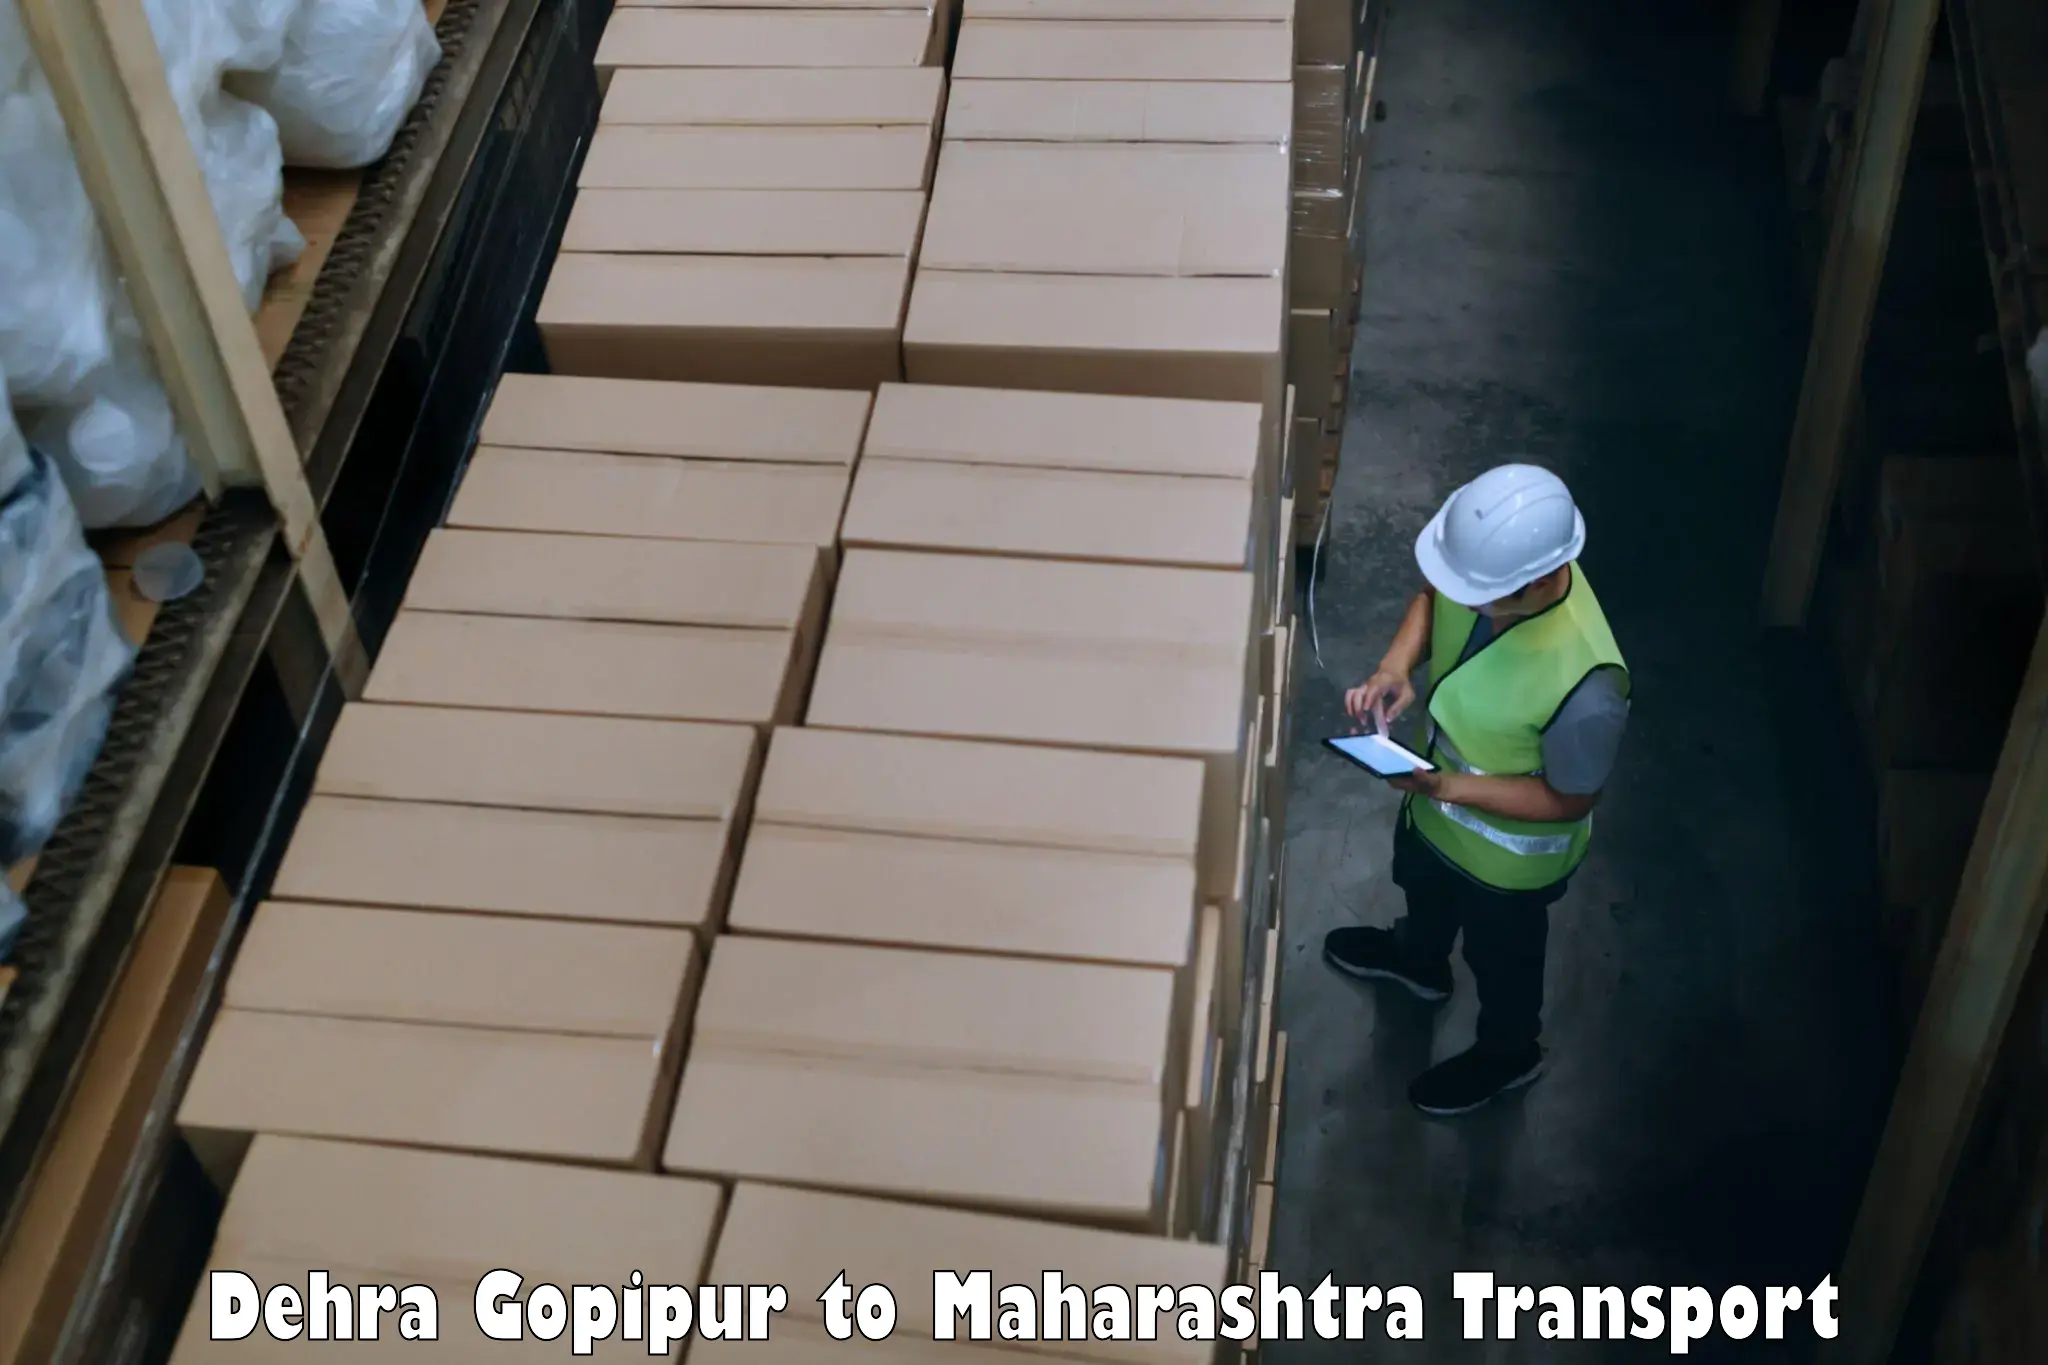 Transportation solution services Dehra Gopipur to Loni Ahmednagar